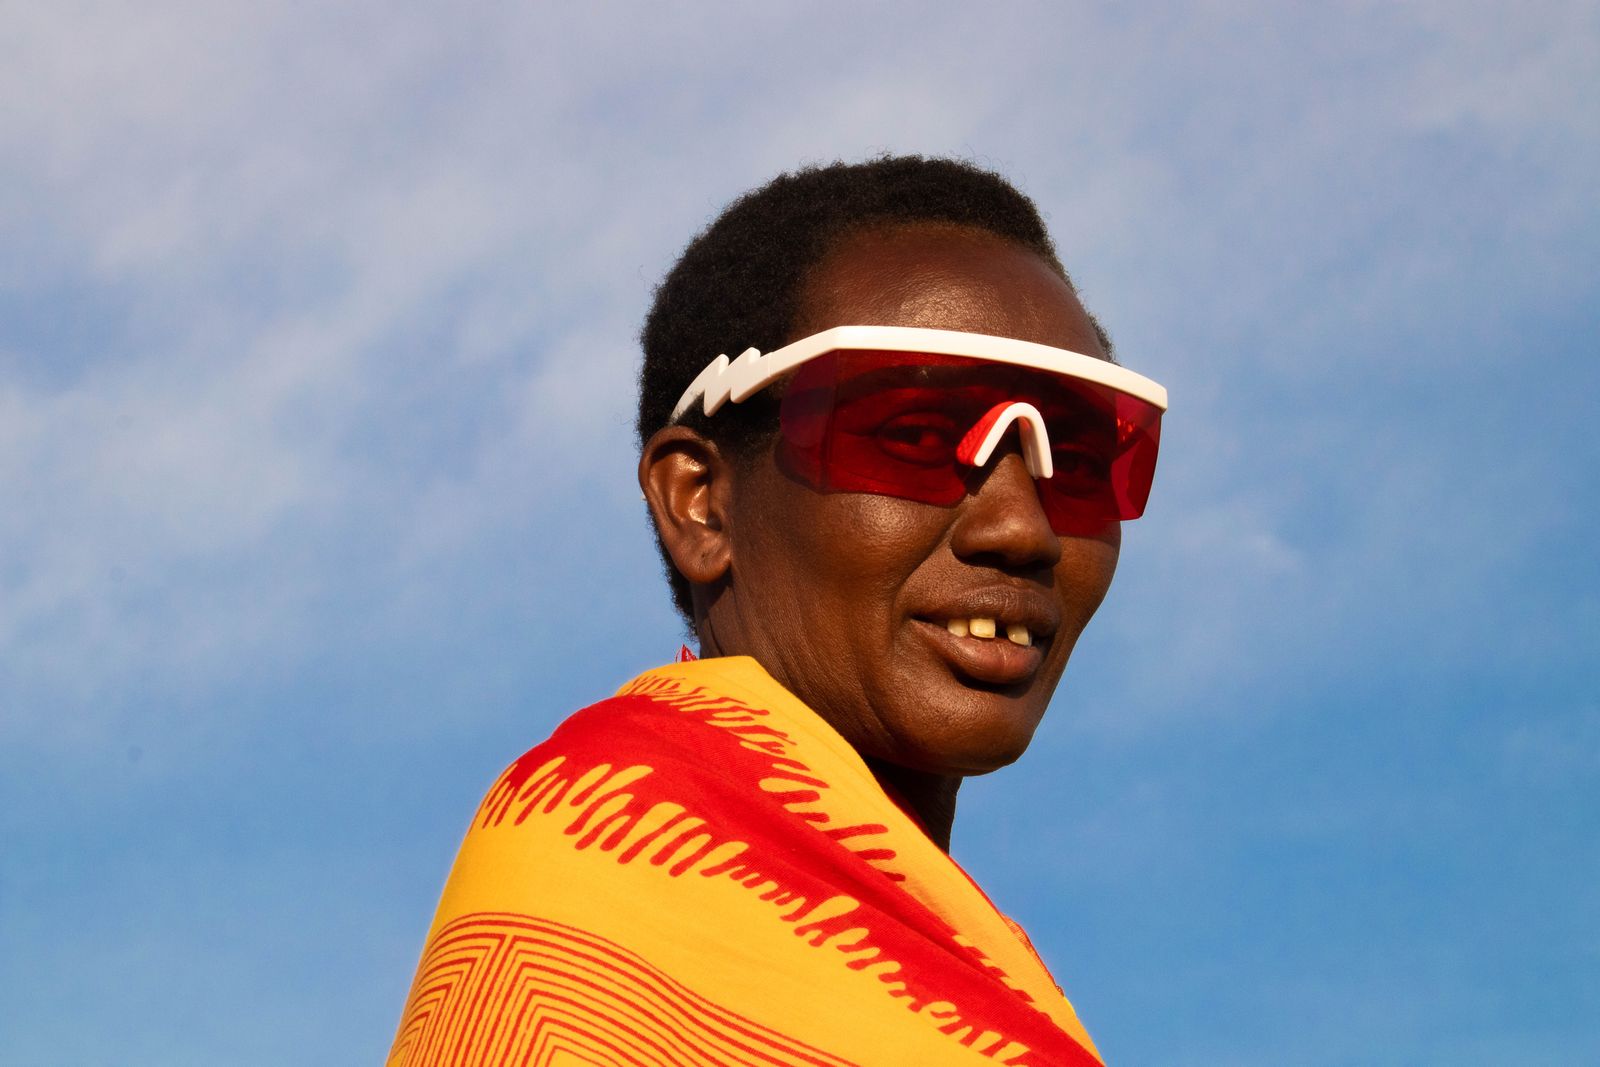 © Nwando Ebeledike - Member of the Massai Mara Community, Kenya